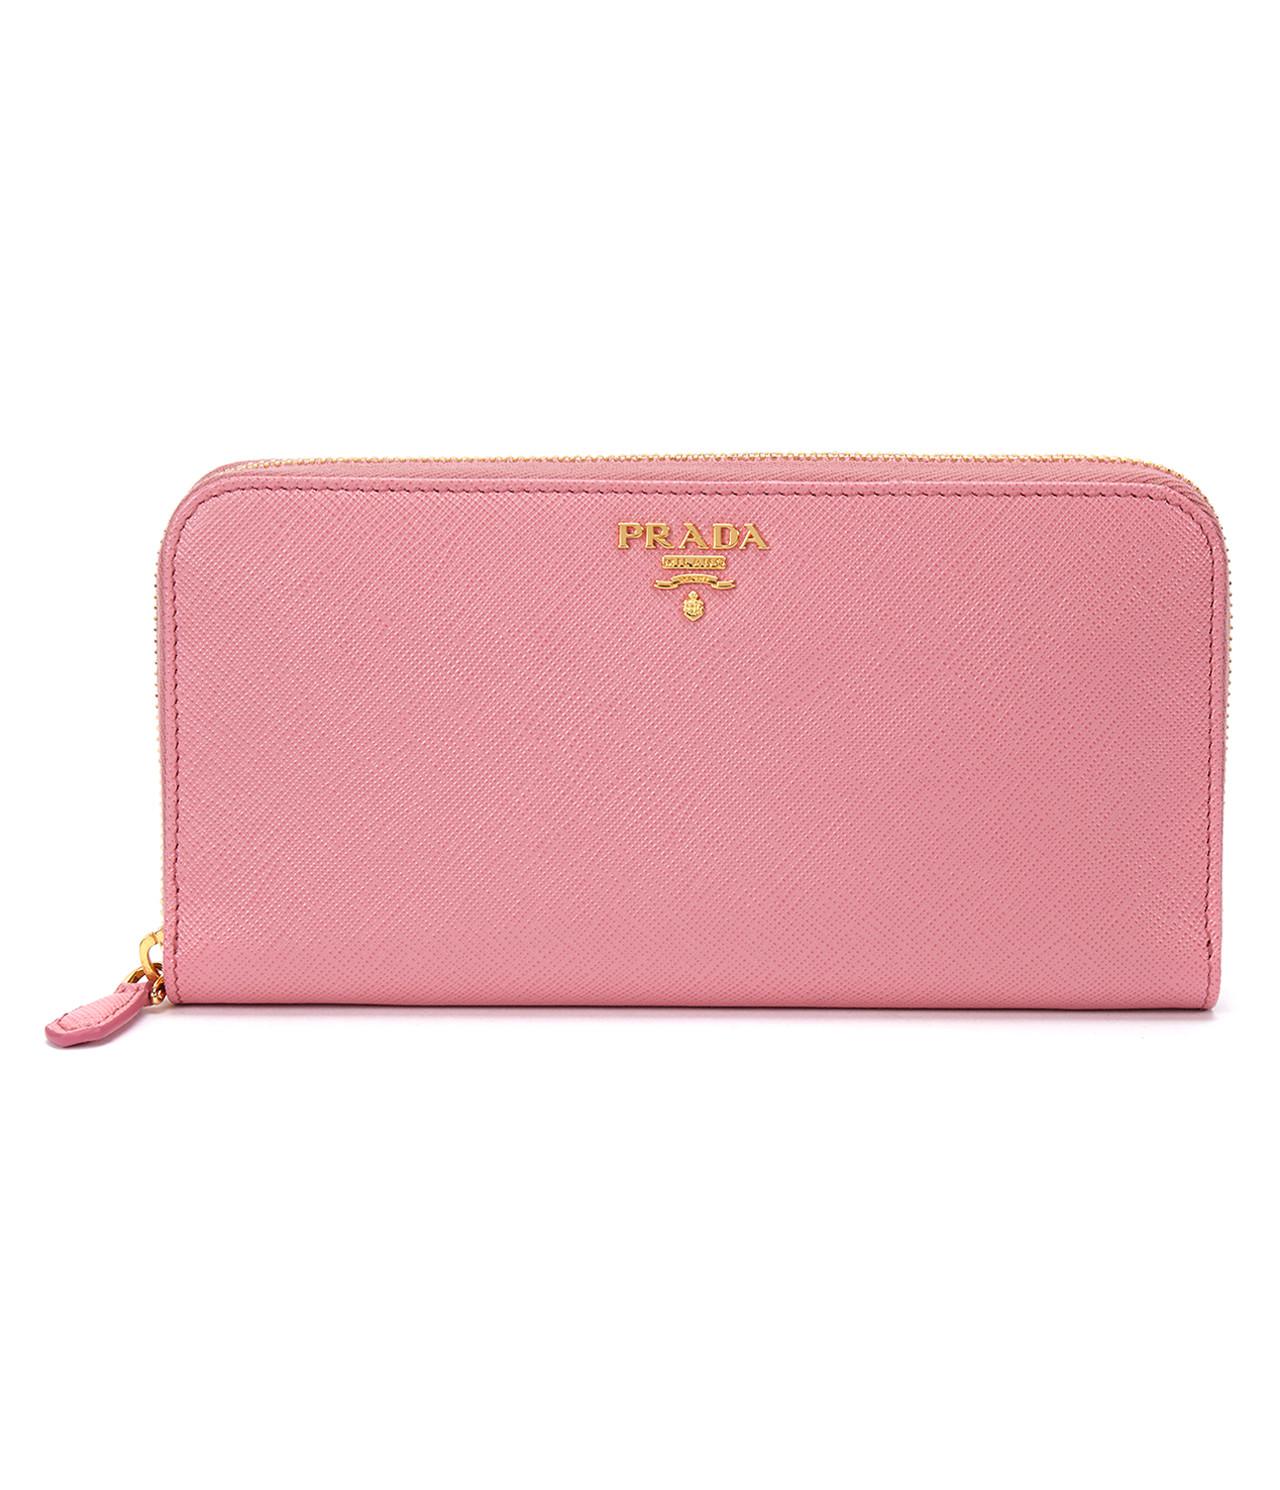 Lyst - Prada 17ss Women's Zip Around Wallet 1ml506 Petalo in Pink